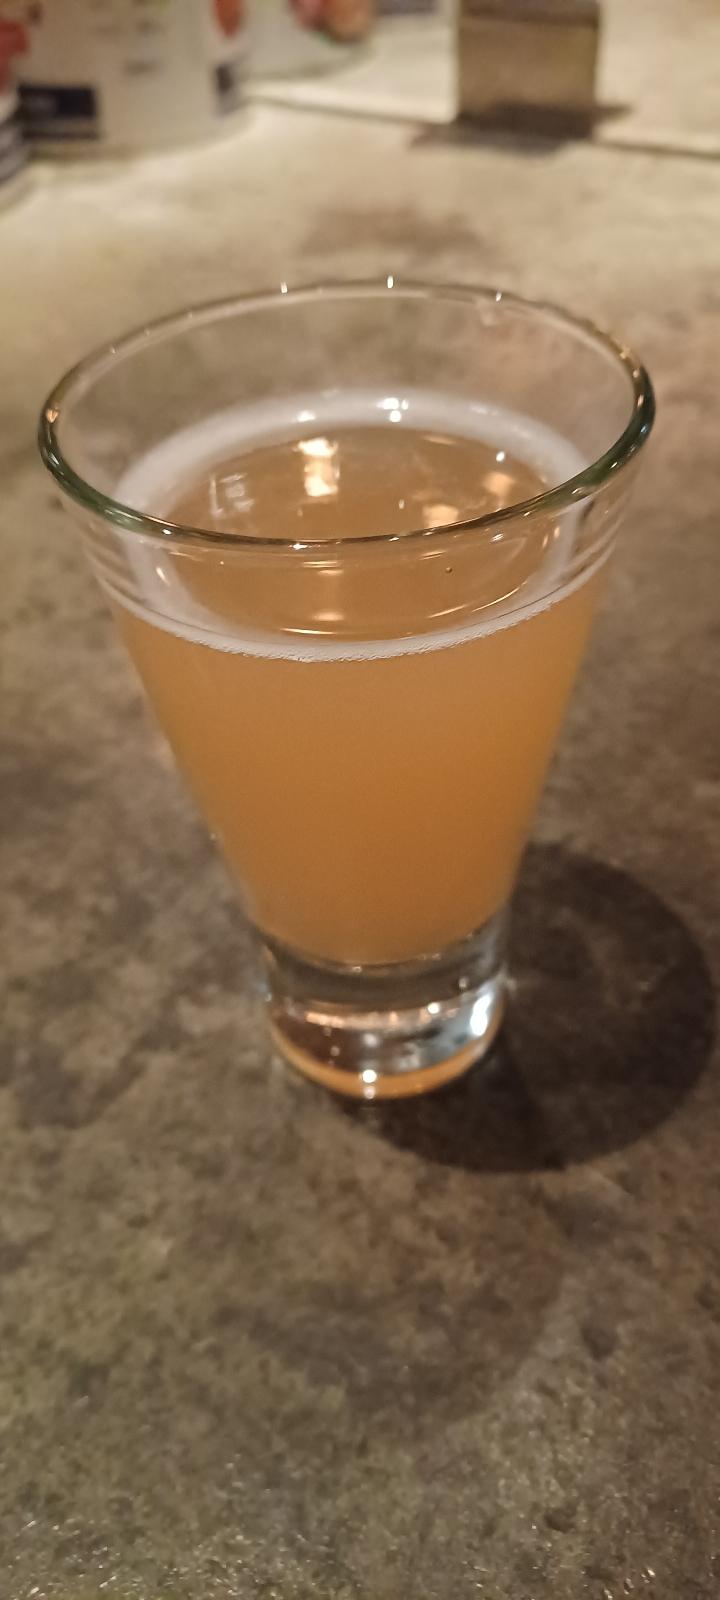 Iwatekura Hobo Cidre